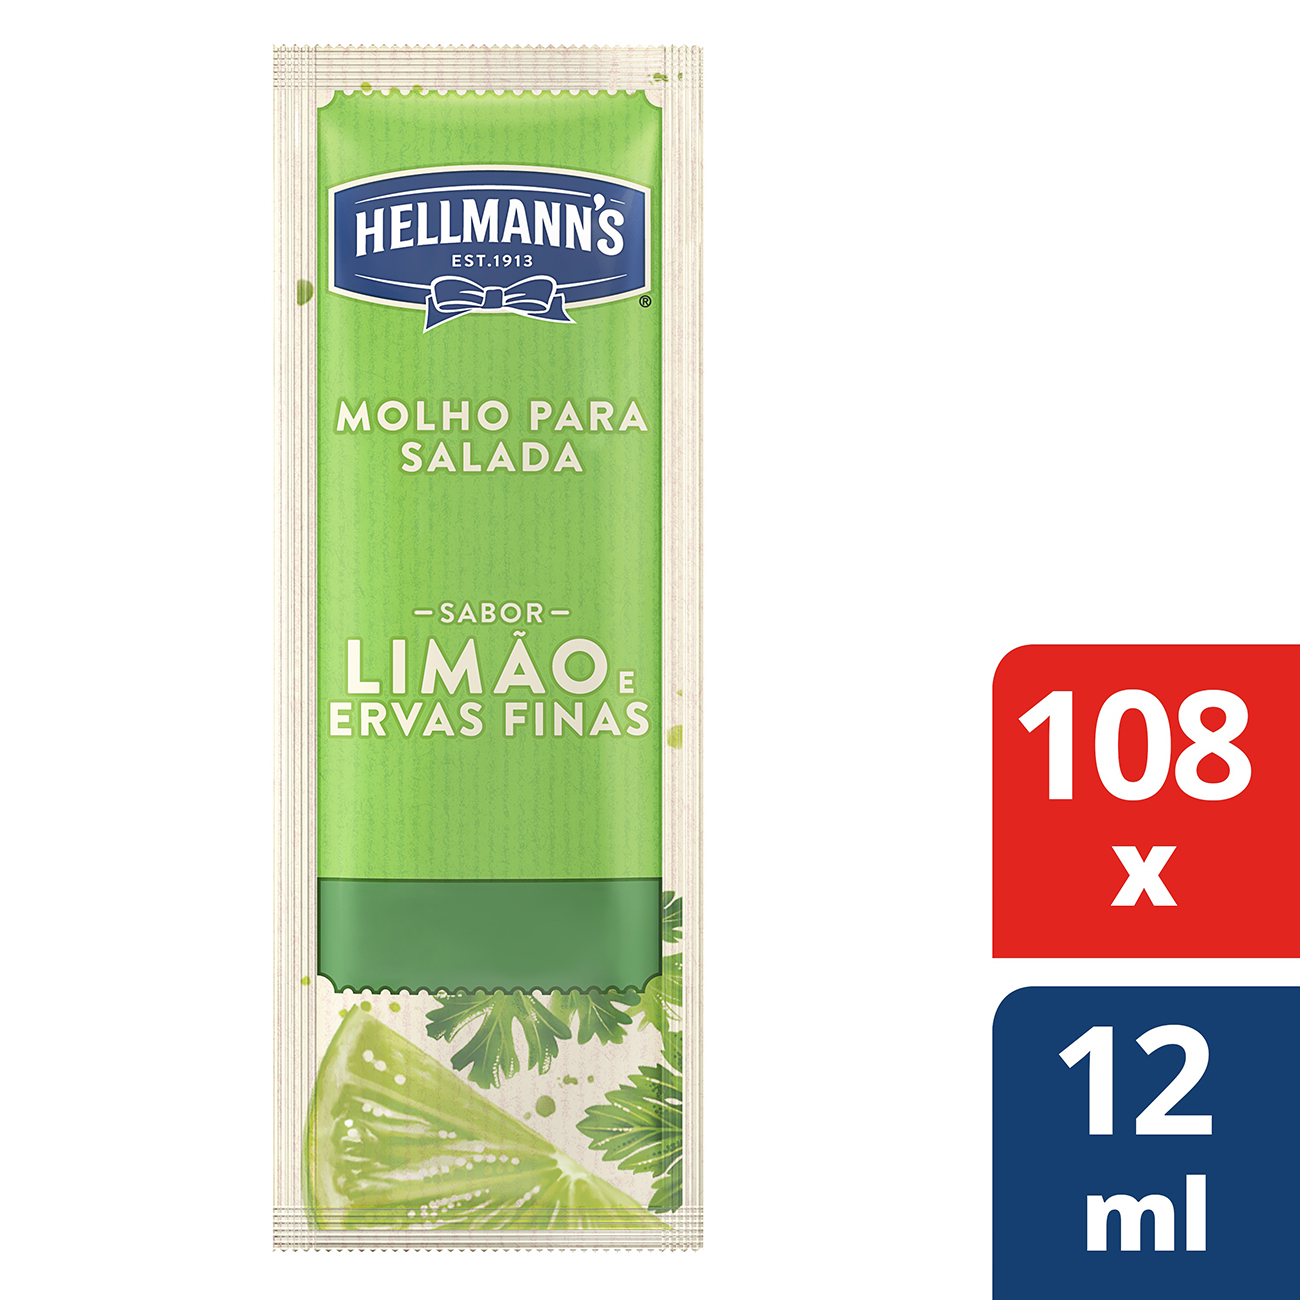 Molho Para Salada Hellmann's Lim�o e Ervas Finas 12ml | Com 108 sach�s